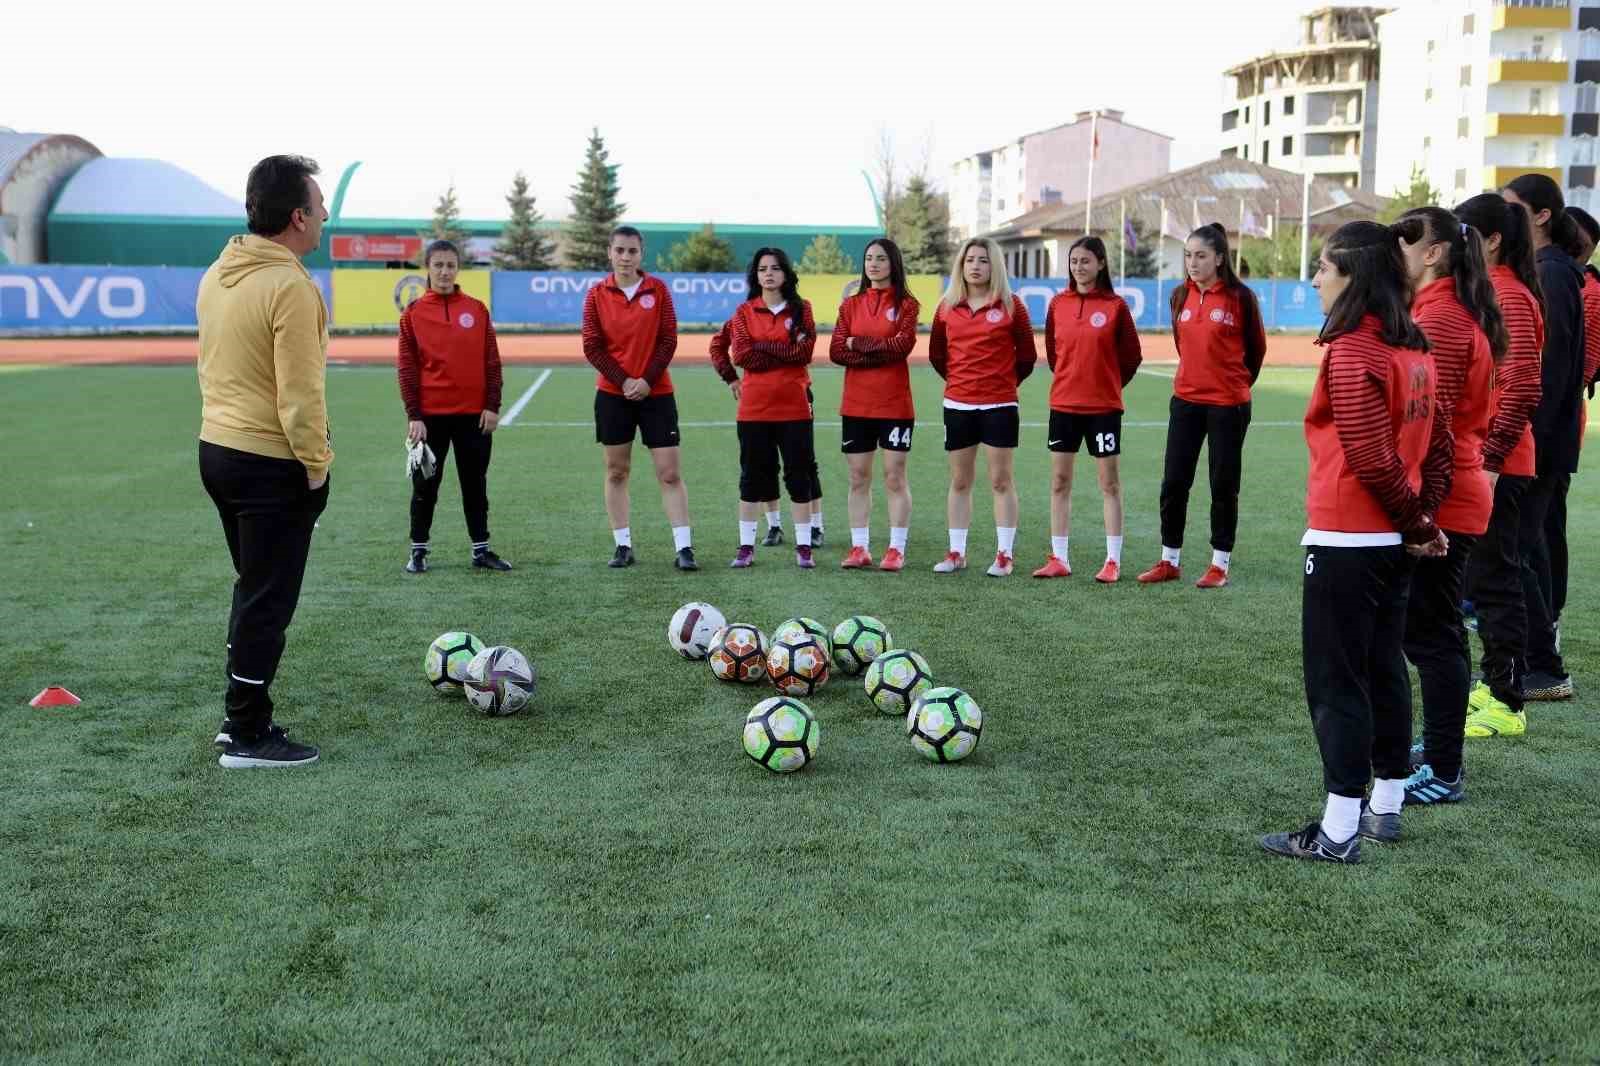 Önyargılara meydan okuyan Ağrı’nın tek kadın futbol takımı zirveye yükseliyor
